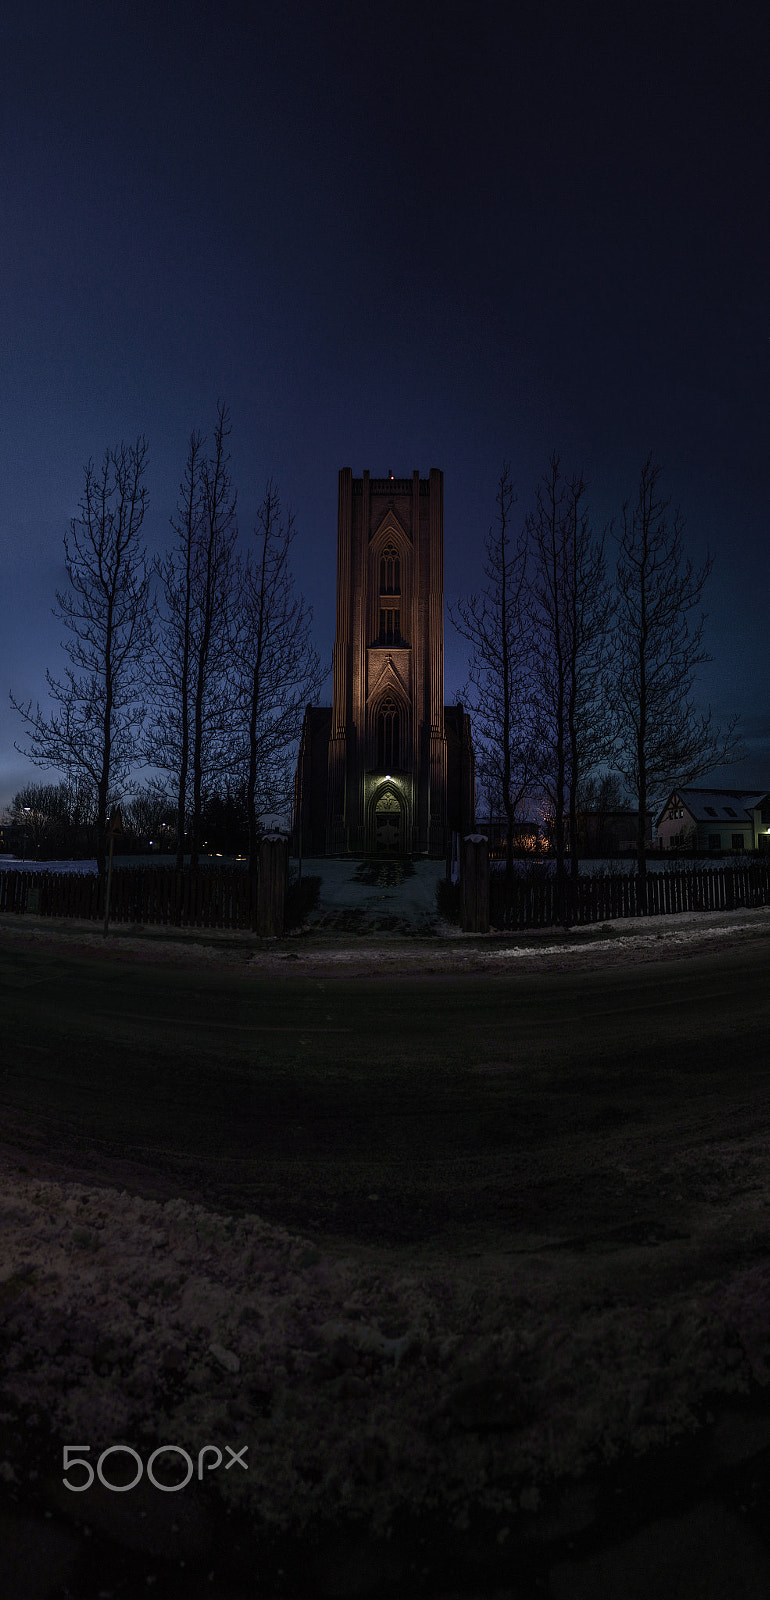 Nikon D3200 + AF Zoom-Nikkor 28-80mm f/3.3-5.6G sample photo. The catholic church in reykjavik, iceland photography